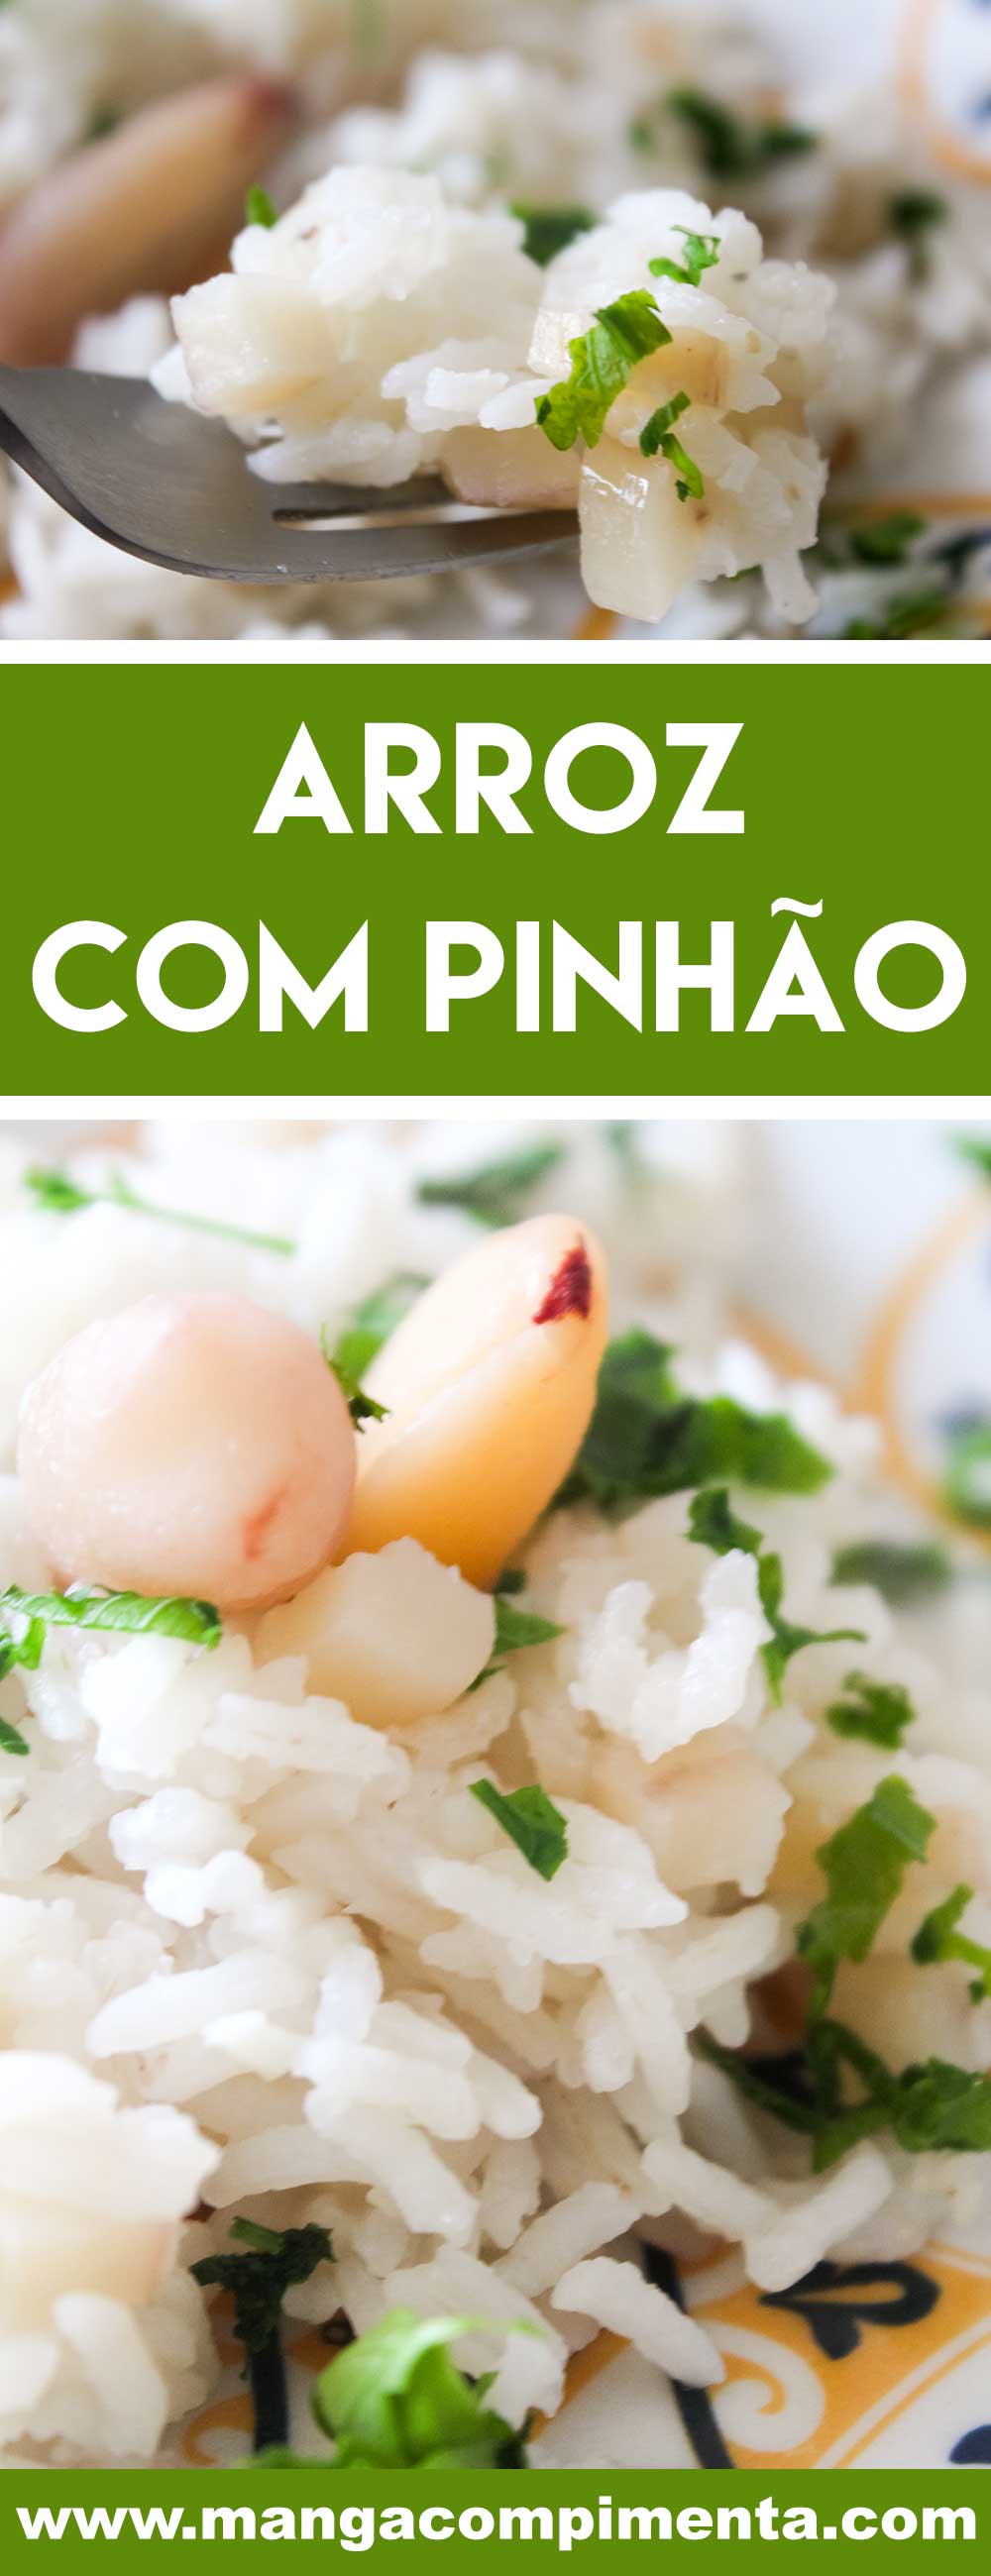 Receita de Arroz com Pinhão - um prato delicioso para a festa junina com a família!